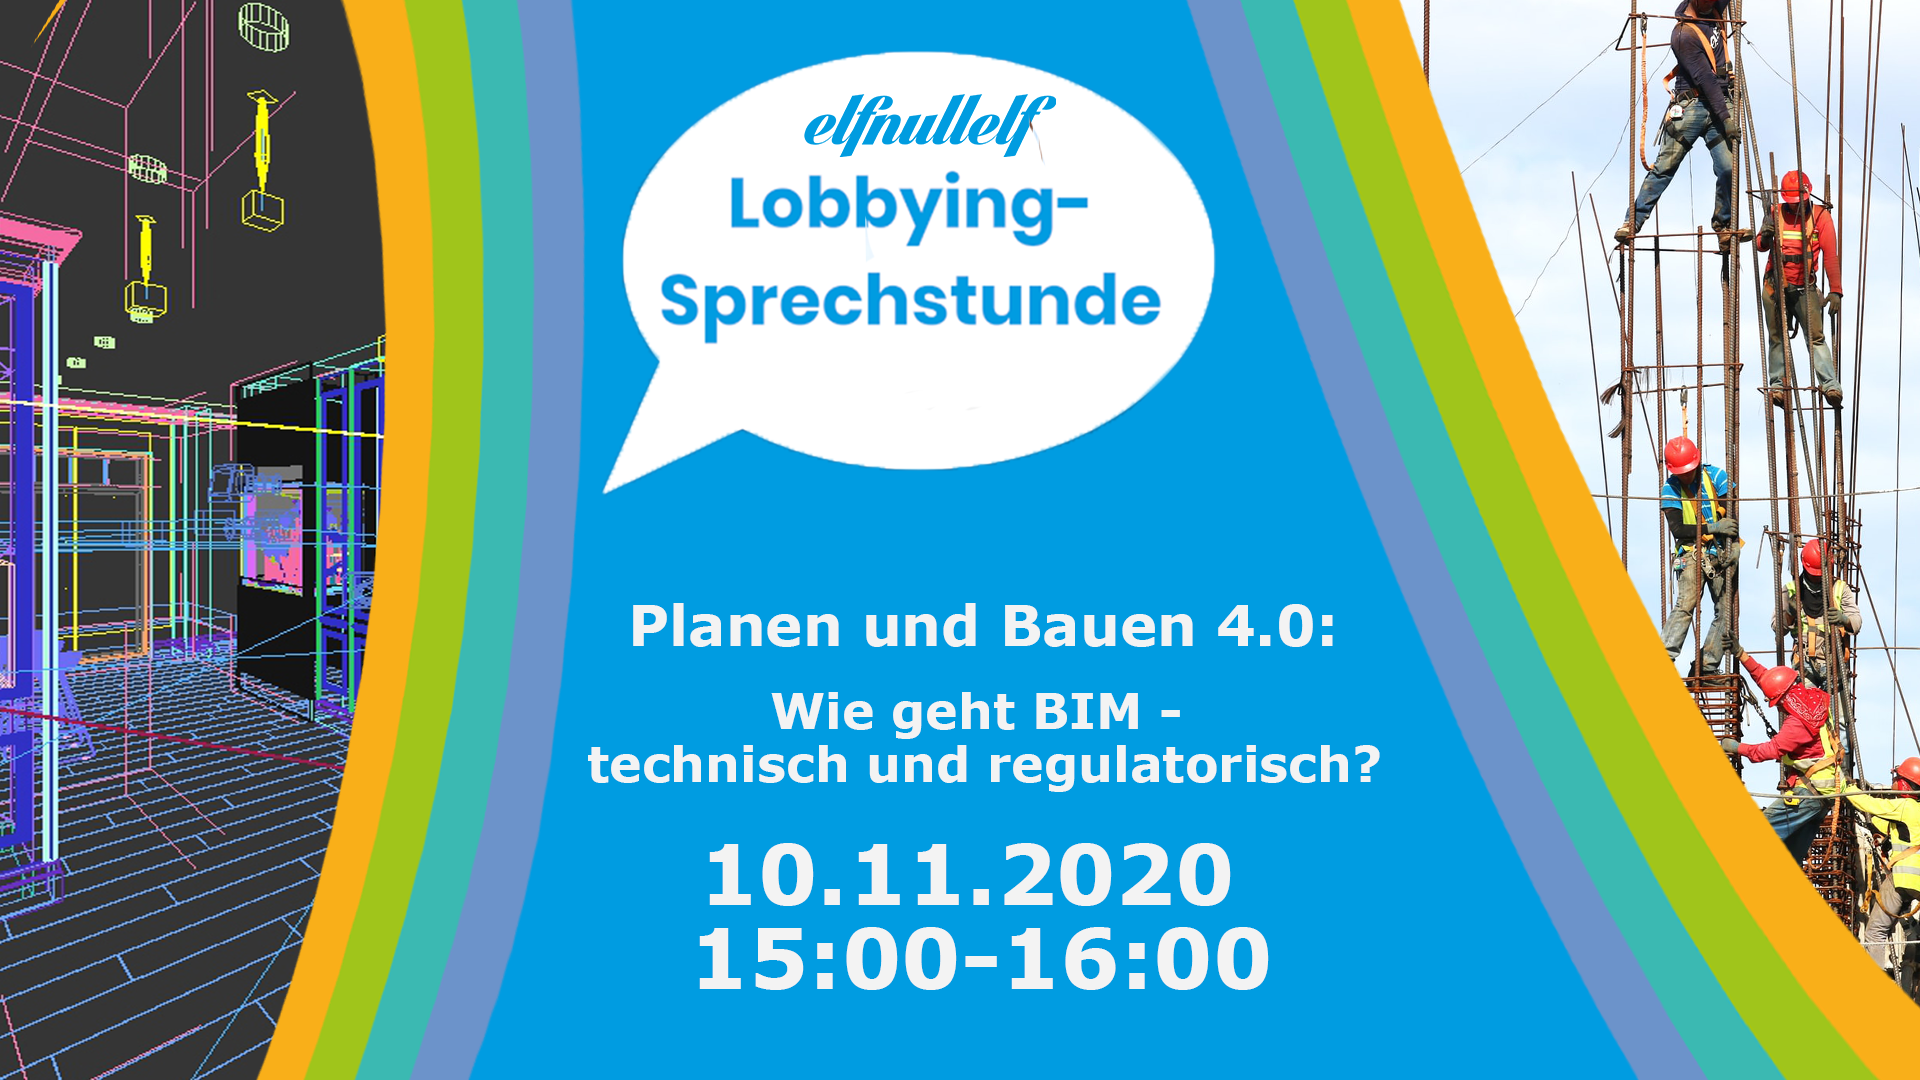 Lobbying-Sprechstunde: Planen und Bauen 4.0: Wie geht BIM – technisch und regulatorisch?